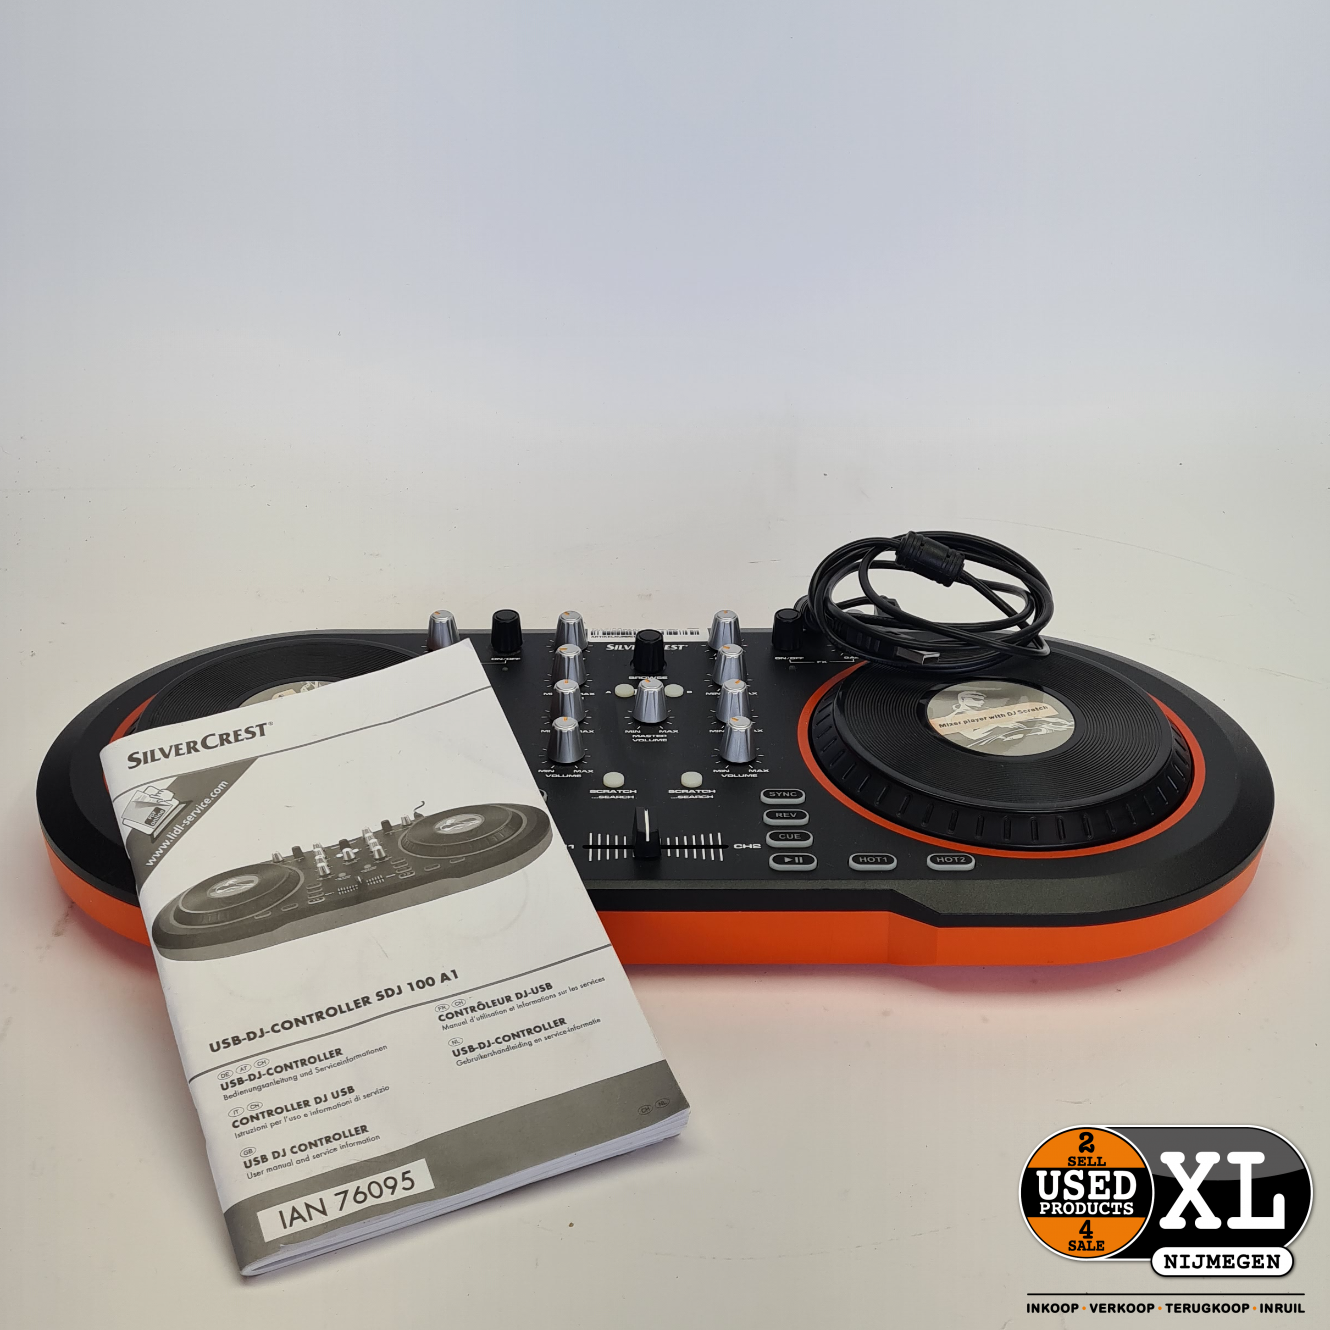 SilverCrest USB DJ Controller SDJ 100 A1 | Nette Staat - Used Products  Nijmegen XL